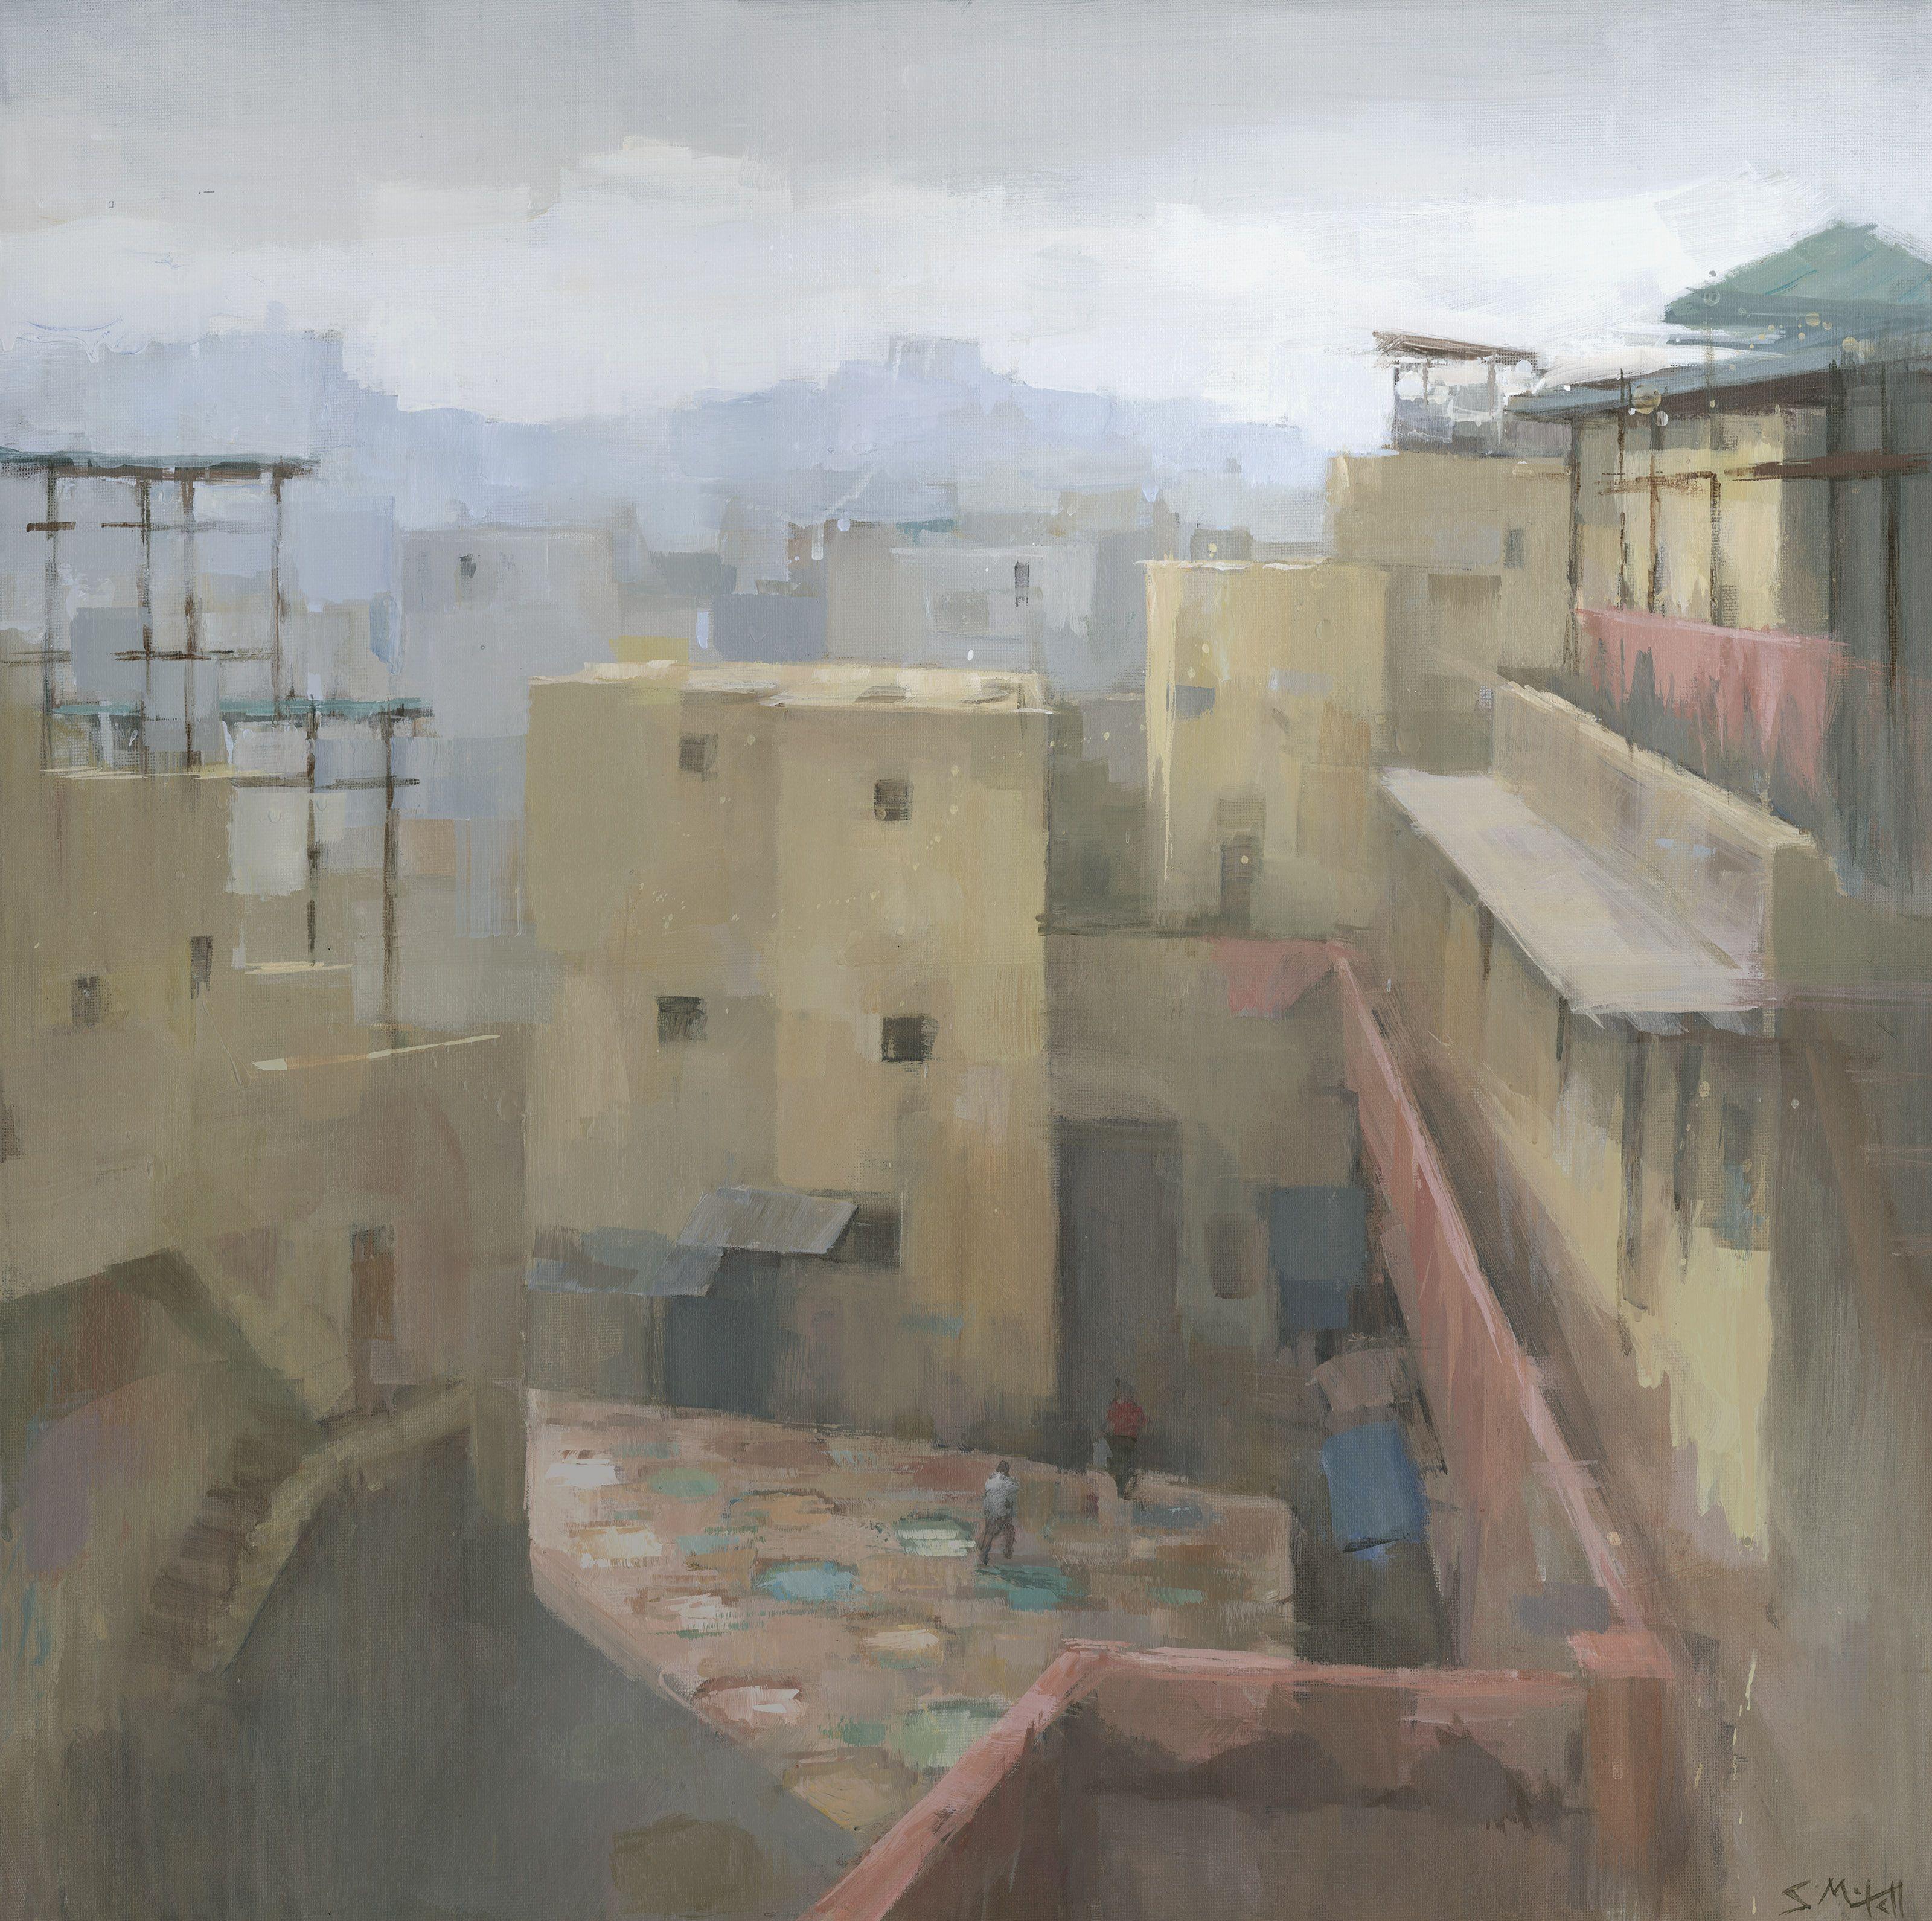 Fez Tannery, Maroc, Peinture, Acrylique sur Toile - Painting de Stephen Mitchell